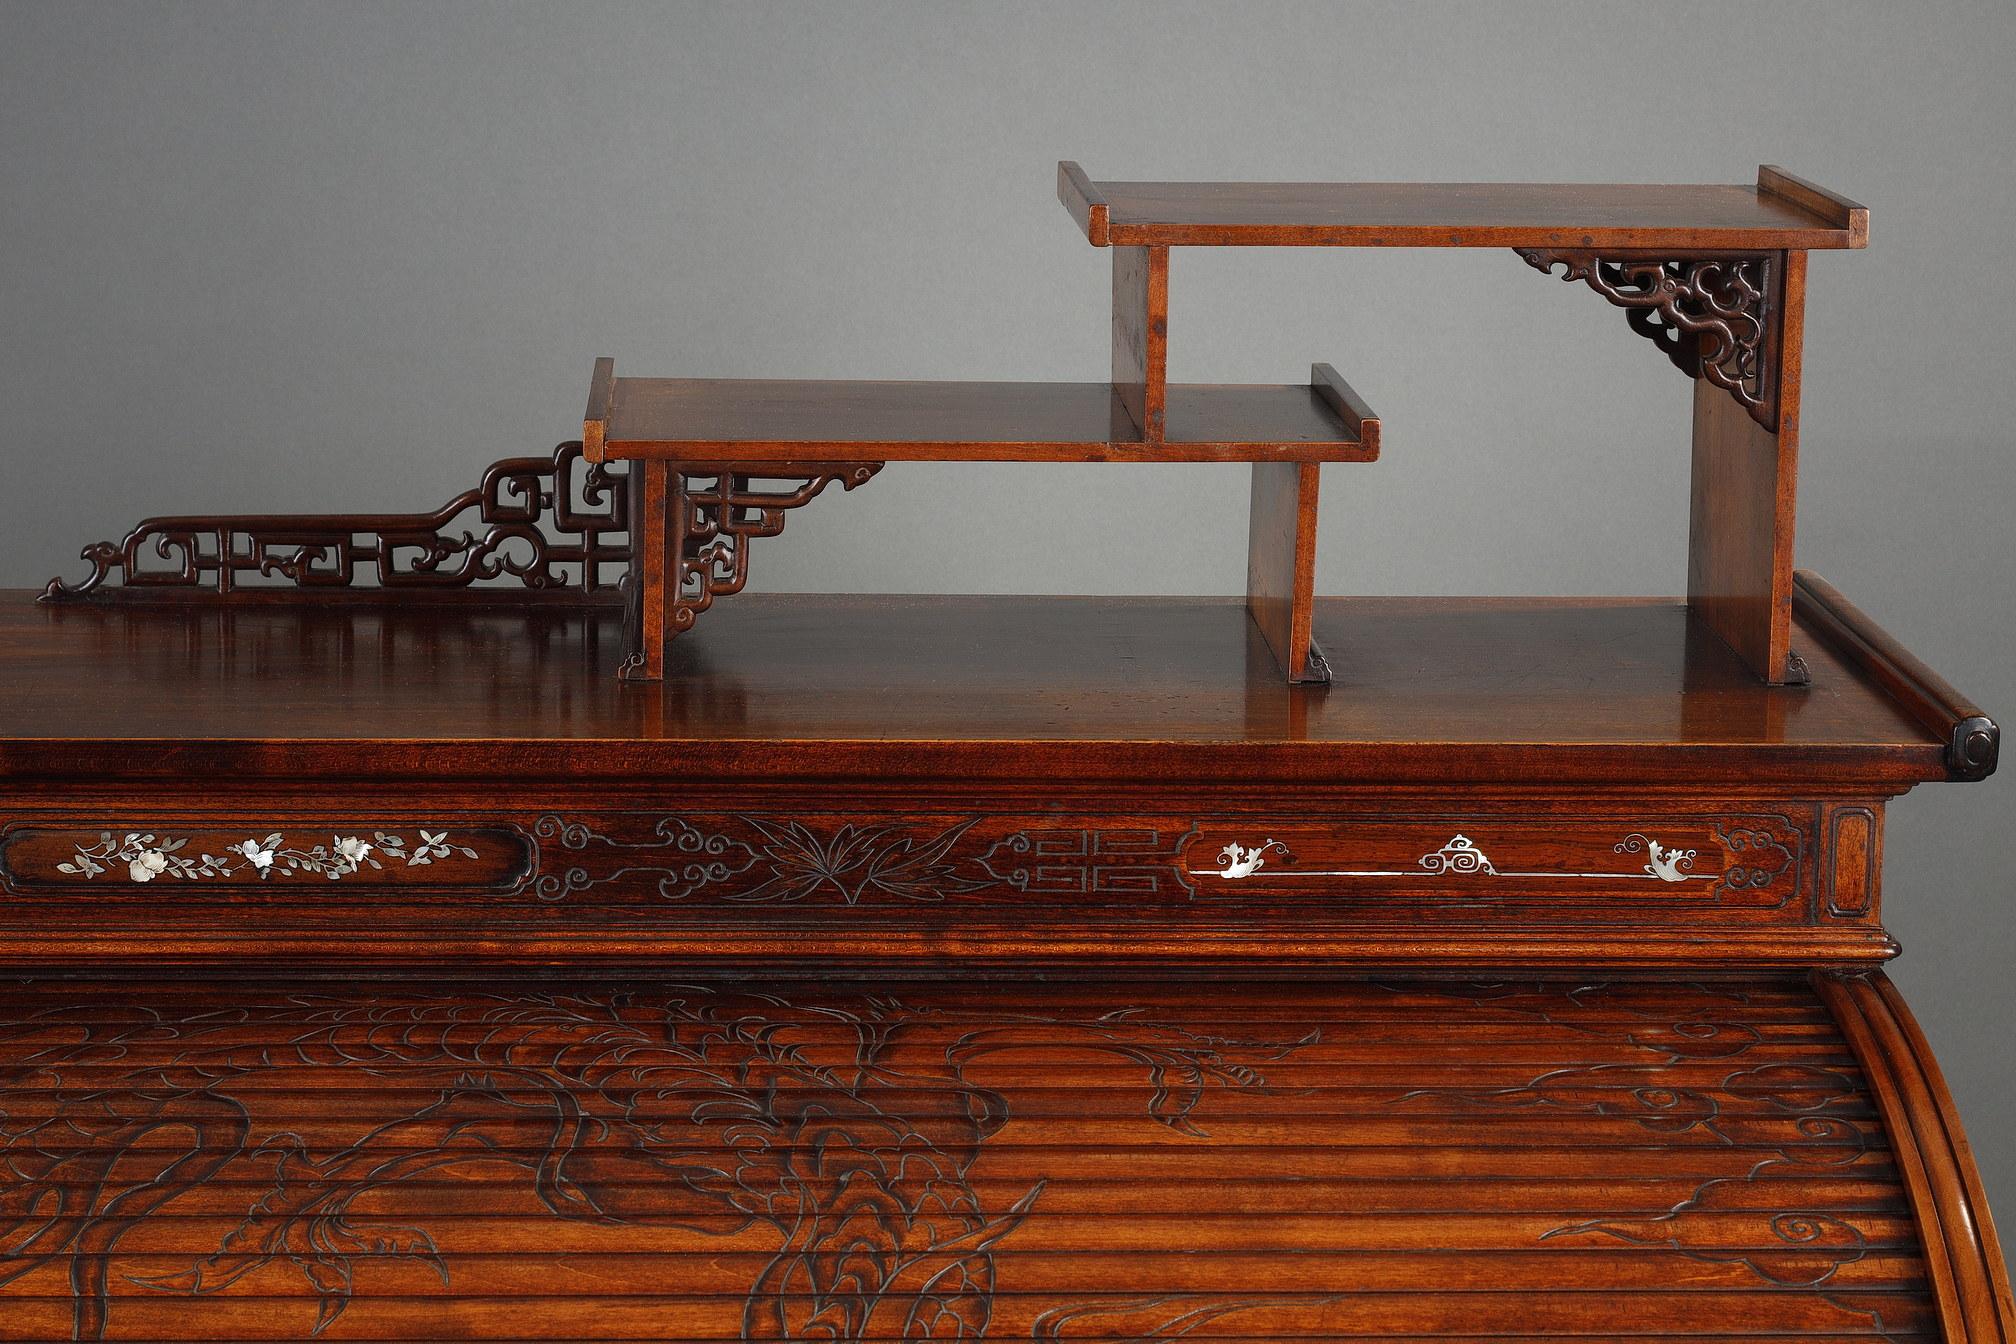 Rare bureau à cylindre de style japonais en bois teinté et sculpté, richement gravé sur toutes les faces de feuillages, de branches de cerisier et d'entrelacs géométriques. Surmonté de deux étagères asymétriques, le cylindre est décoré d'un dragon